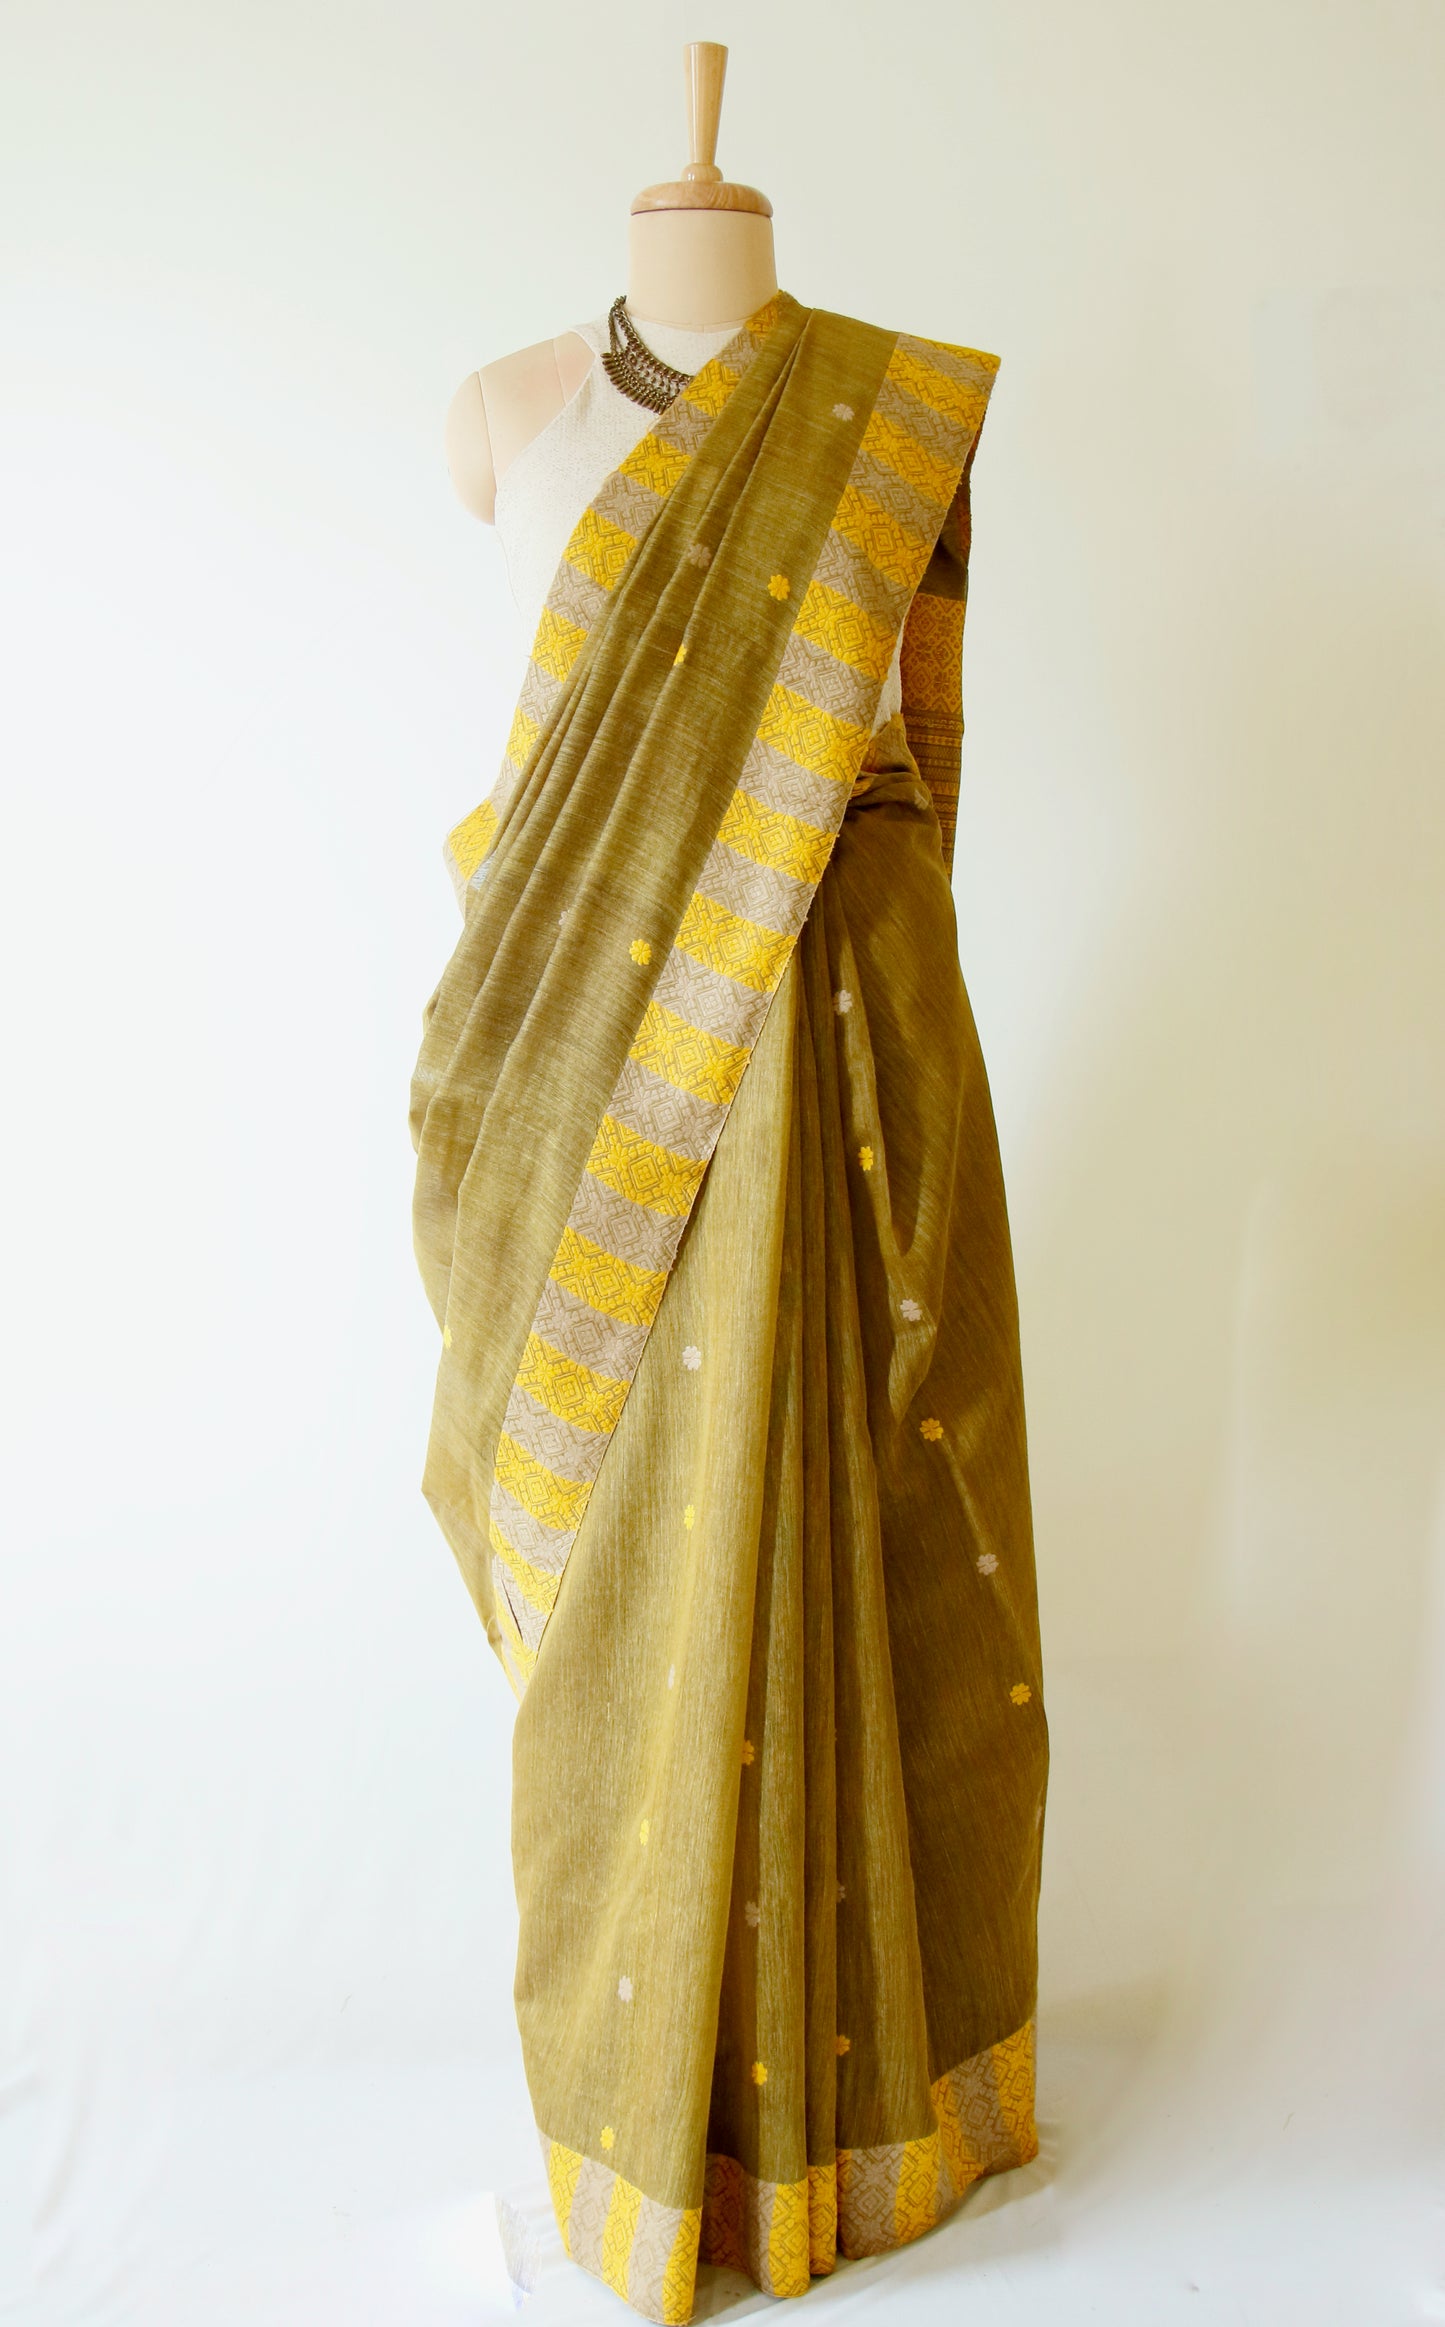 Natural dyed Eri Silk / Mulberry silk handloom saree from Assam